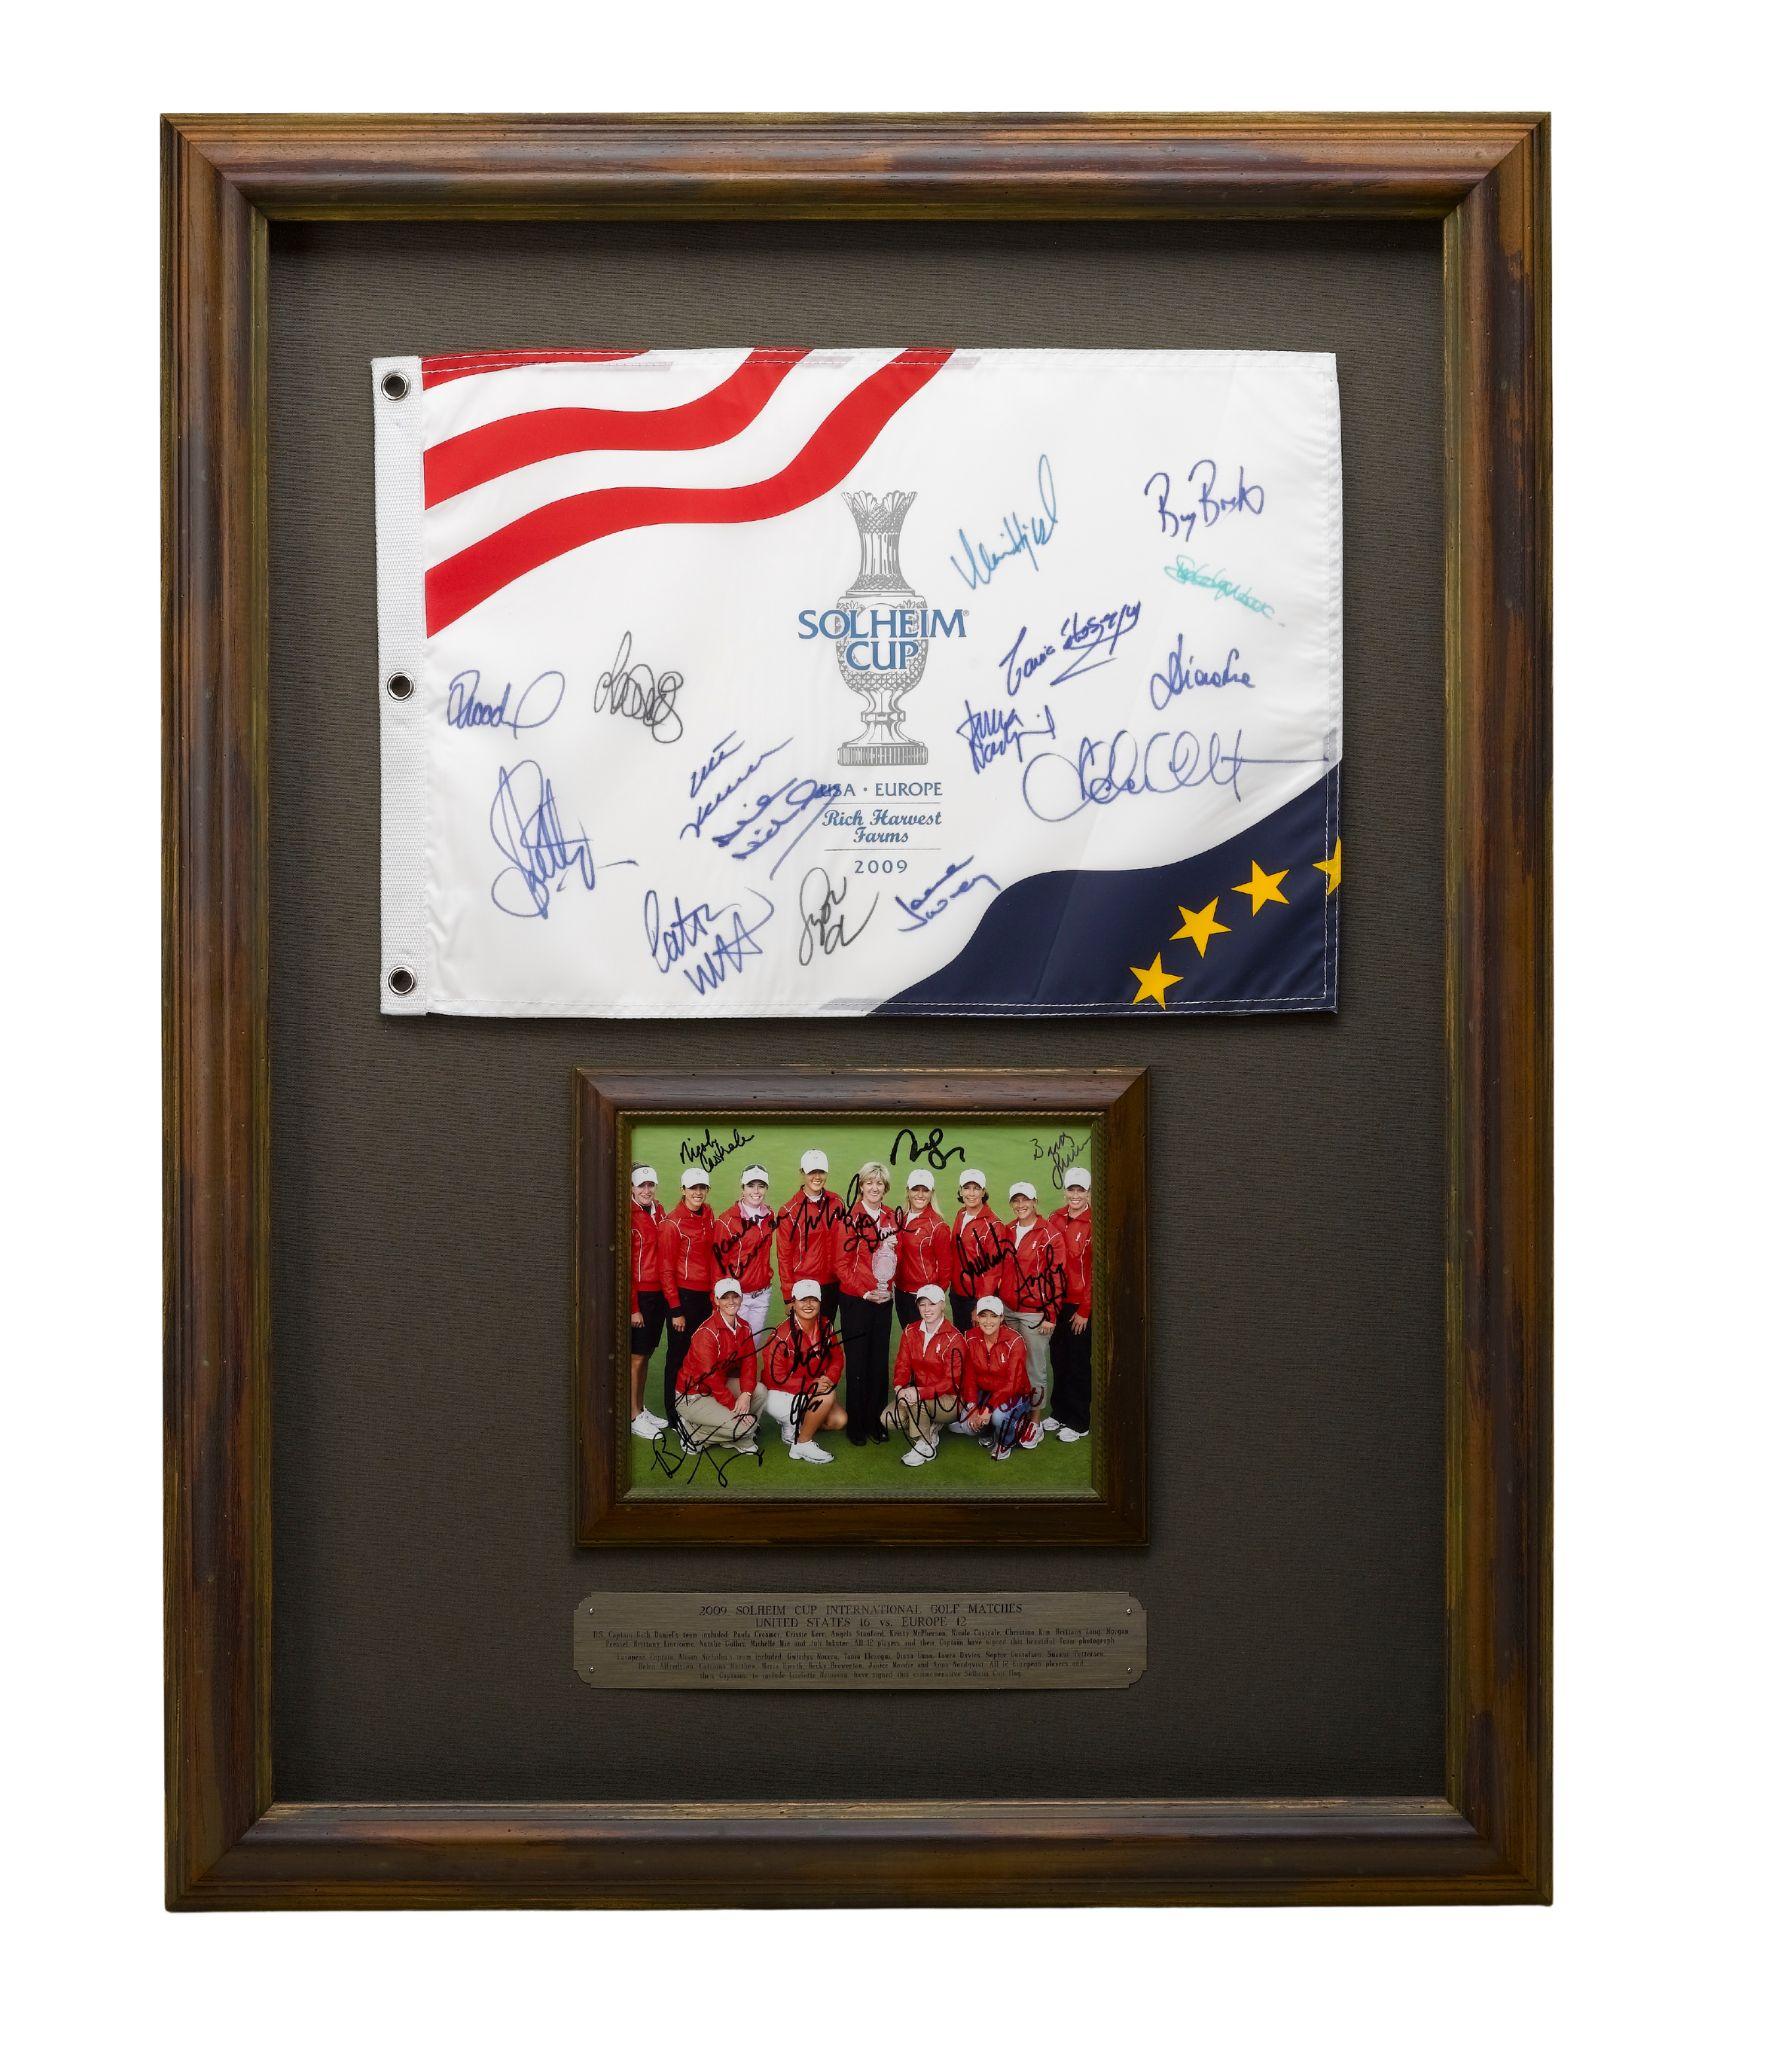 Ce collage dédicacé rend hommage aux golfeuses des équipes américaine et européenne de la Solheim Cup 2009. Les 11e matchs de la Solheim Cup se sont déroulés du 21 au 23 août 2009 à Rich Harvest Farms à Sugar Grove, dans l'Illinois. Les matchs